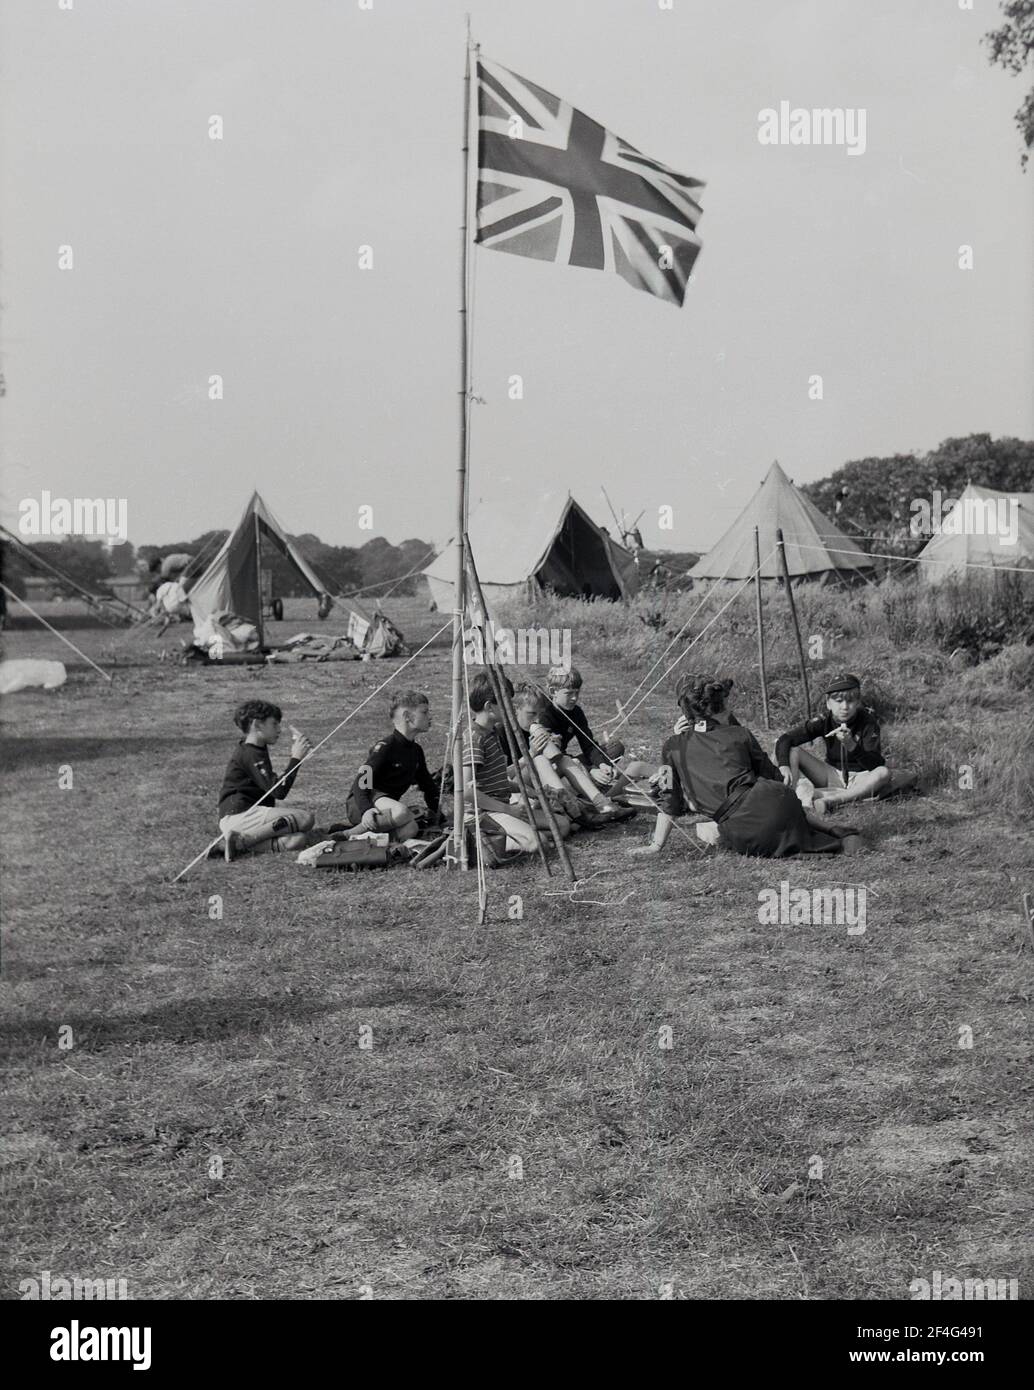 Camp scout des années 50, jeunes garçons assis à l'extérieur dans un champ avec un chef scout, une femme, autour d'un mât avec le drapeau Union Jack dans la zone de parc de Temple Newsam, Leeds, Angleterre, Royaume-Uni. Banque D'Images